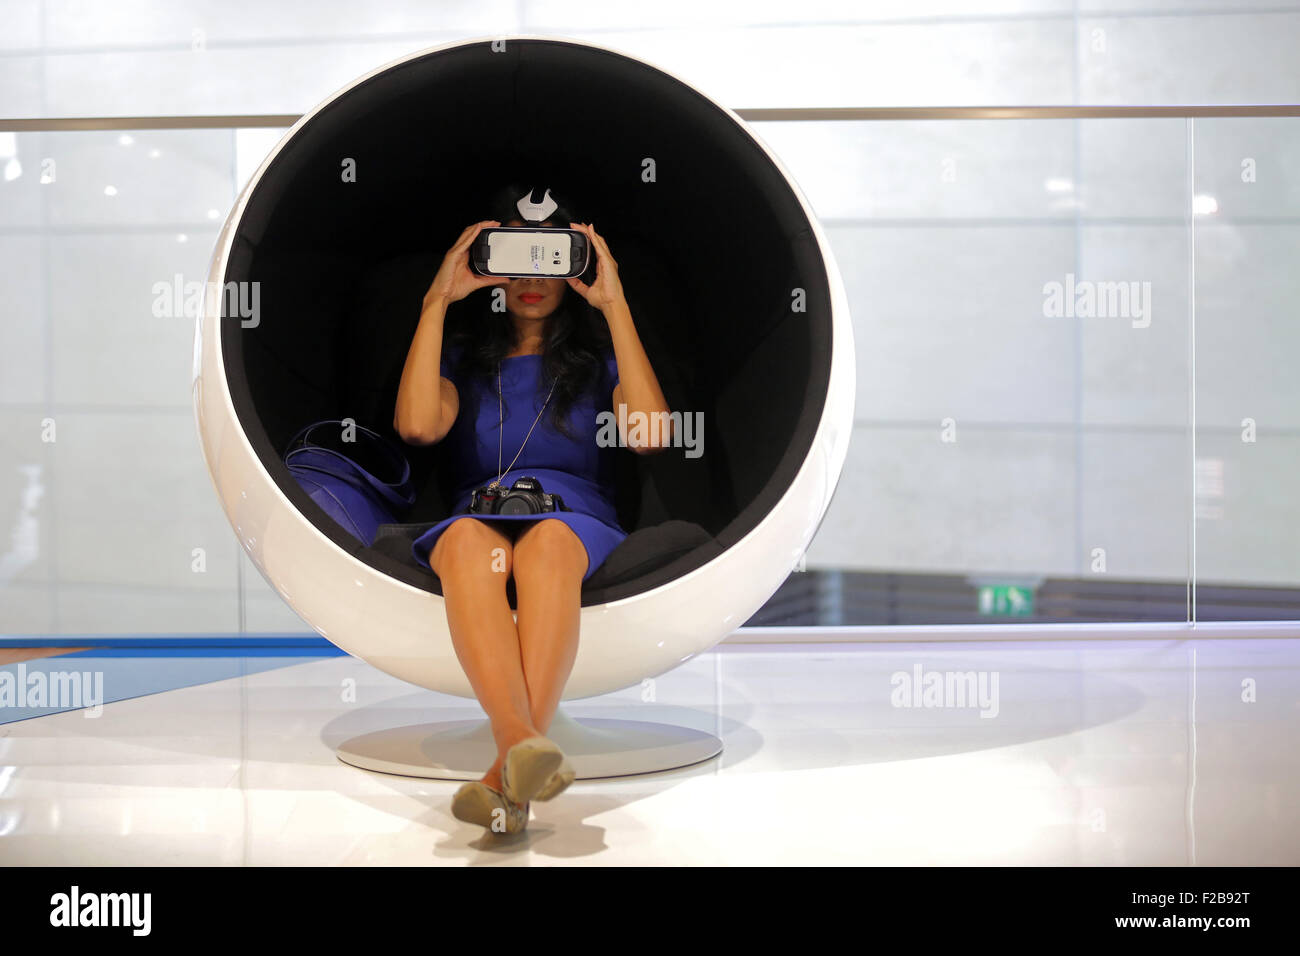 Frankfurt/M, 15.09.2015 - visitatore con una realtà virtuale maschera alla stand BMW al sessantesimo International Motor Show IAA 2015 (Internationale Automobil Ausstellung, IAA) di Francoforte sul Meno, Germania Foto Stock